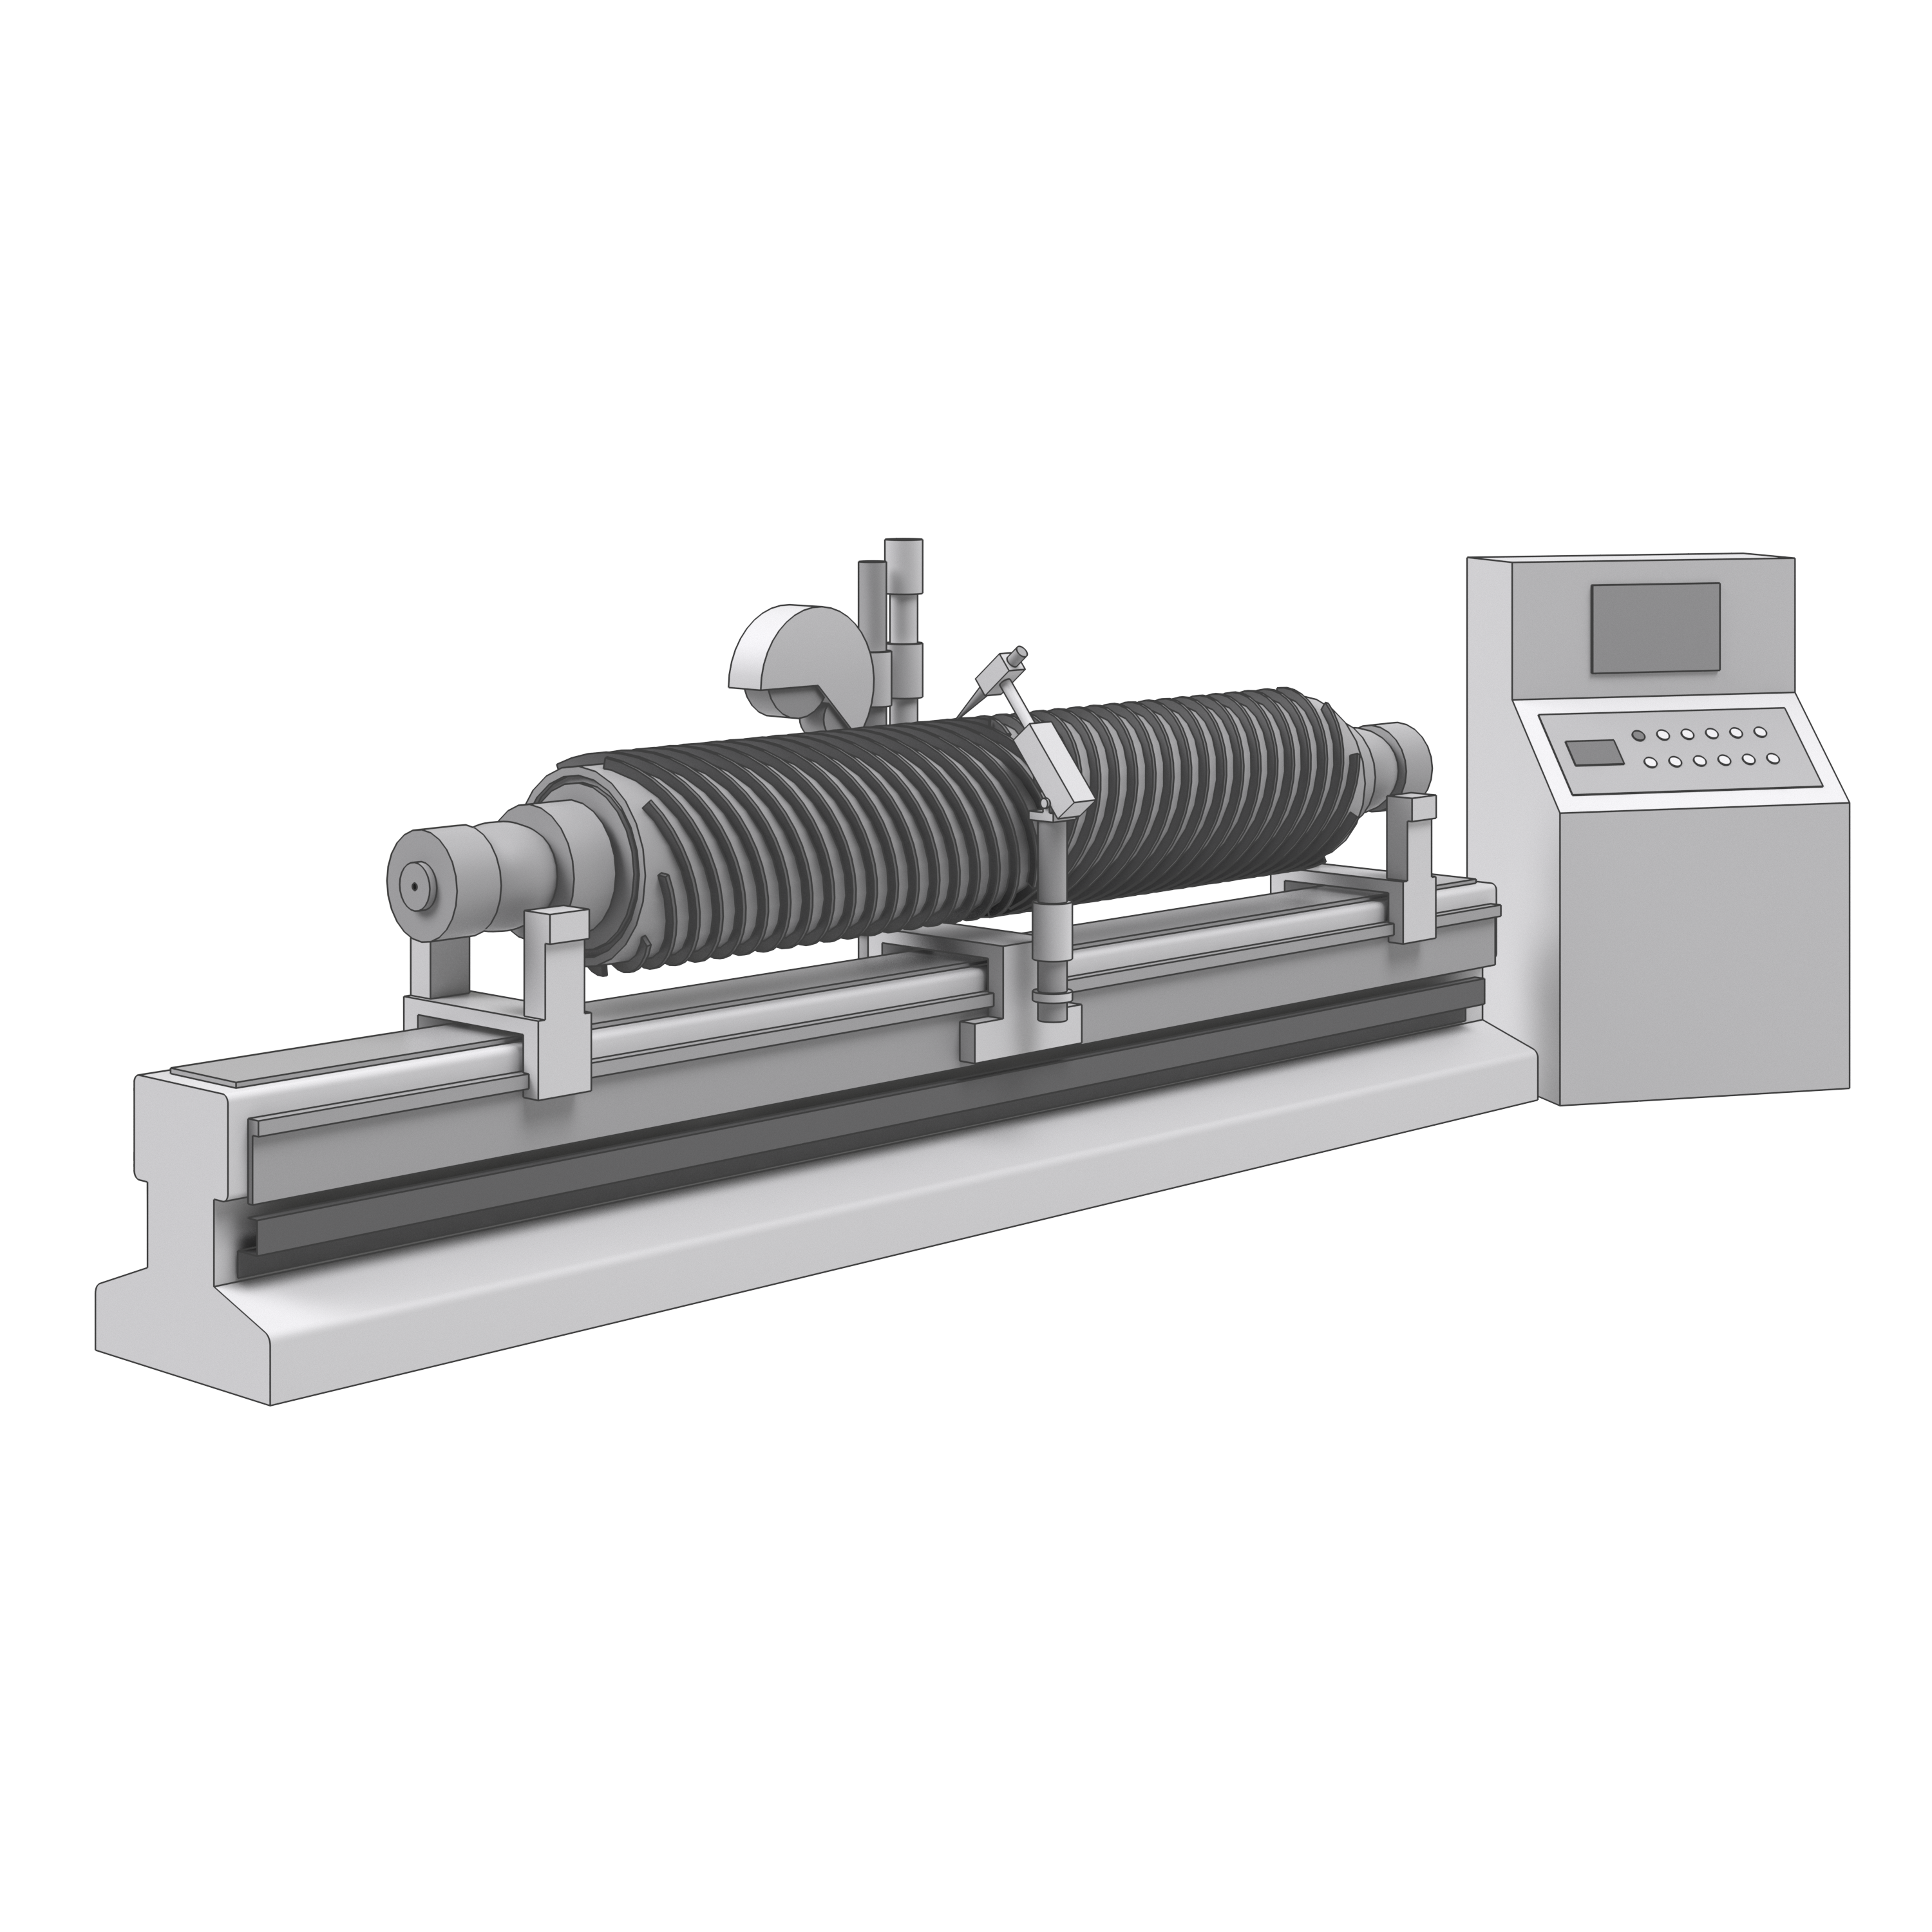 A04.06 – Maschinen zum Instanthalten von Zylindern